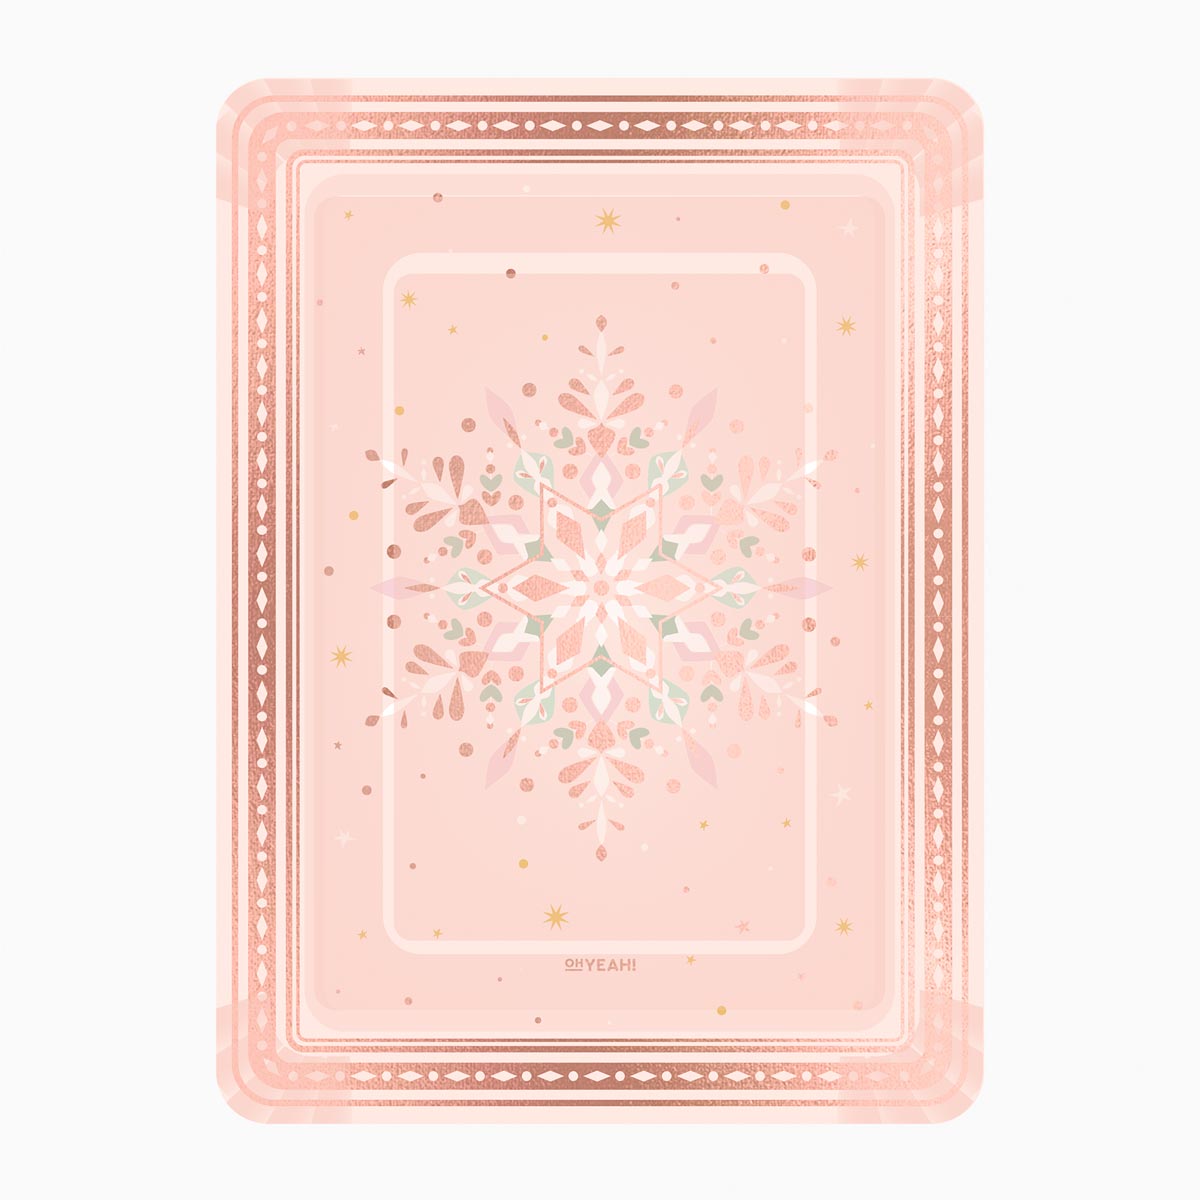 Bandeja metálica retangular natal 25x34 cm Floco de neve congelado de ouro rosa